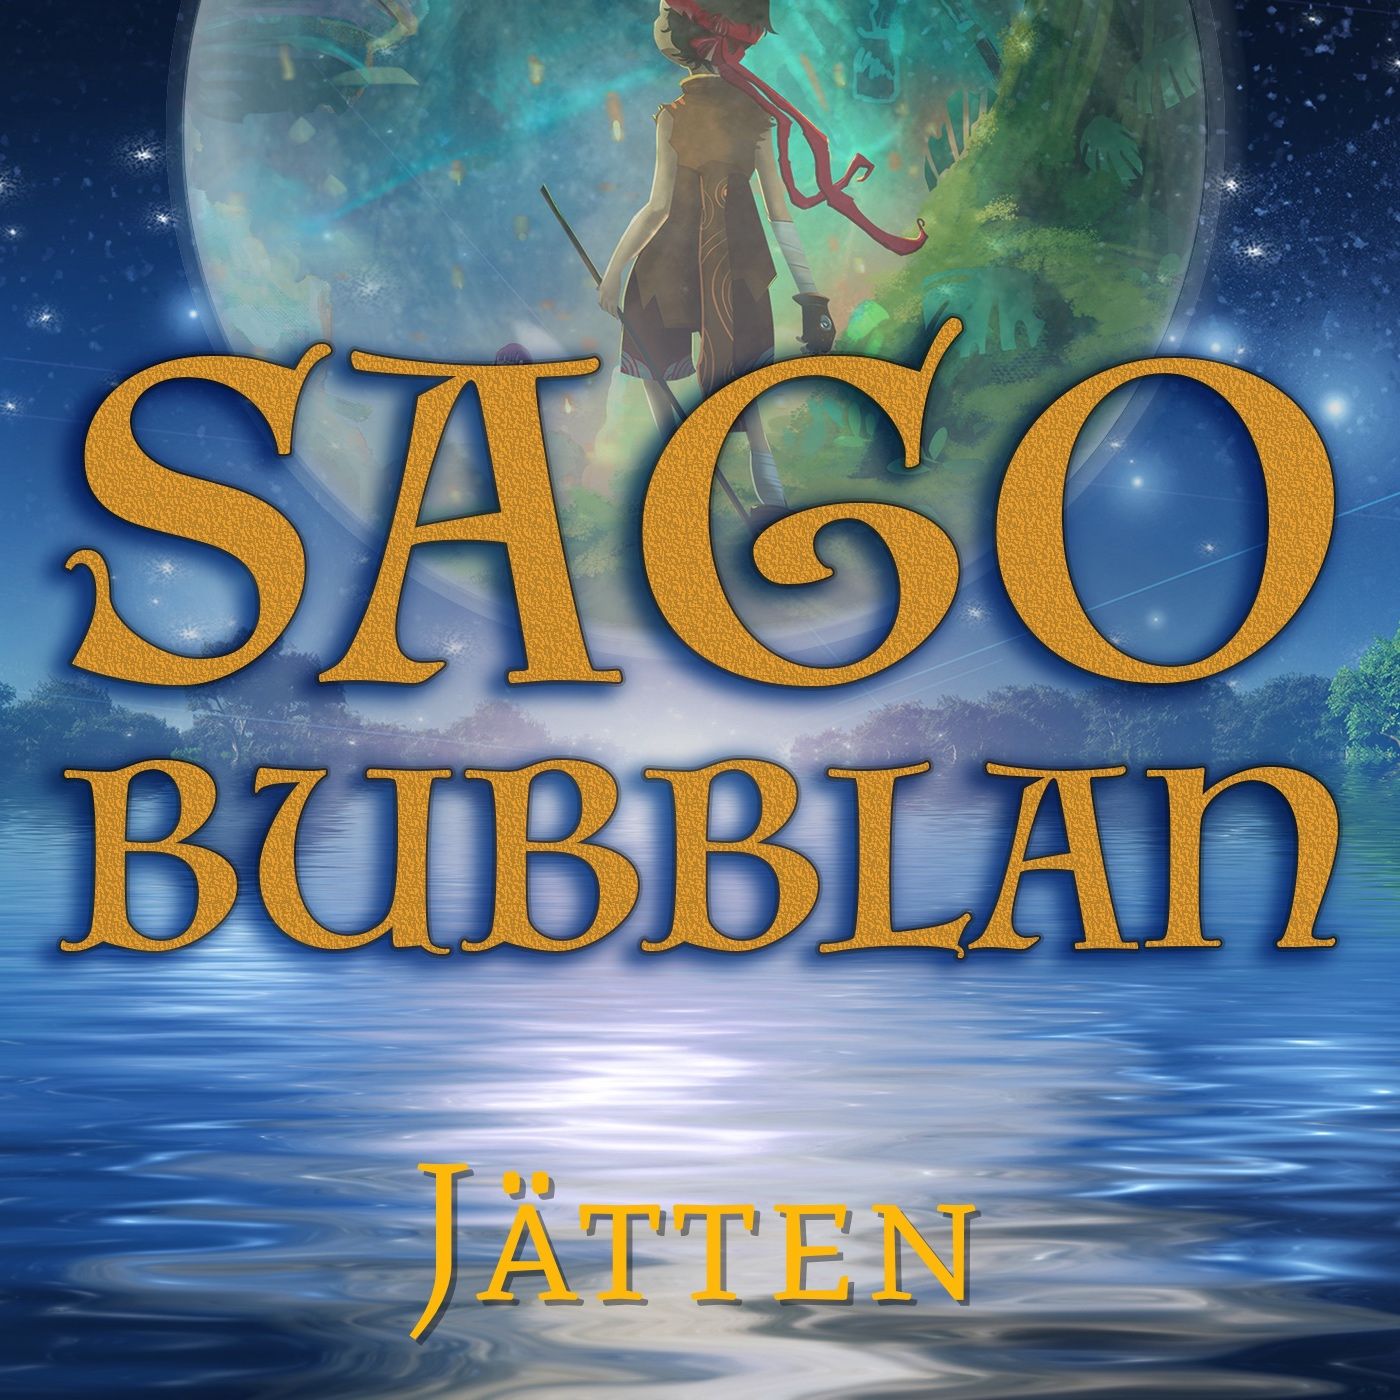 Sagobubblan : Jätten, audiobook by Cecilia Rojek